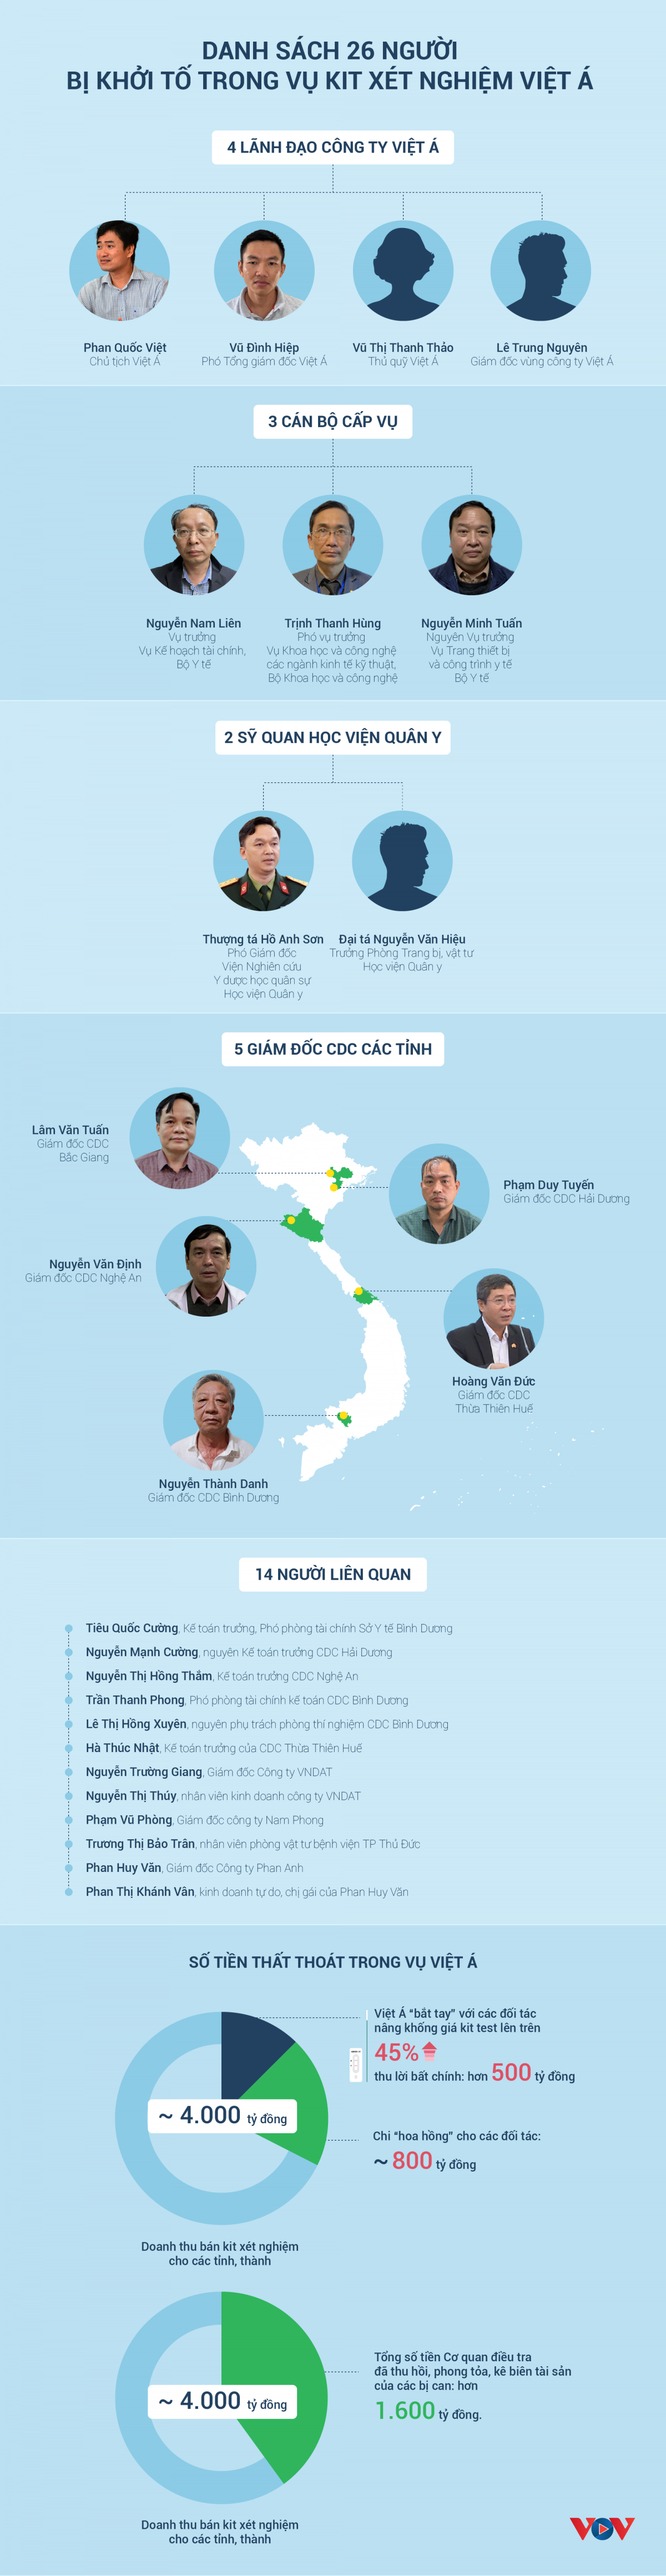 (Infographic) Danh sách 26 người bị khởi tố trong vụ kit xét nghiệm Việt Á